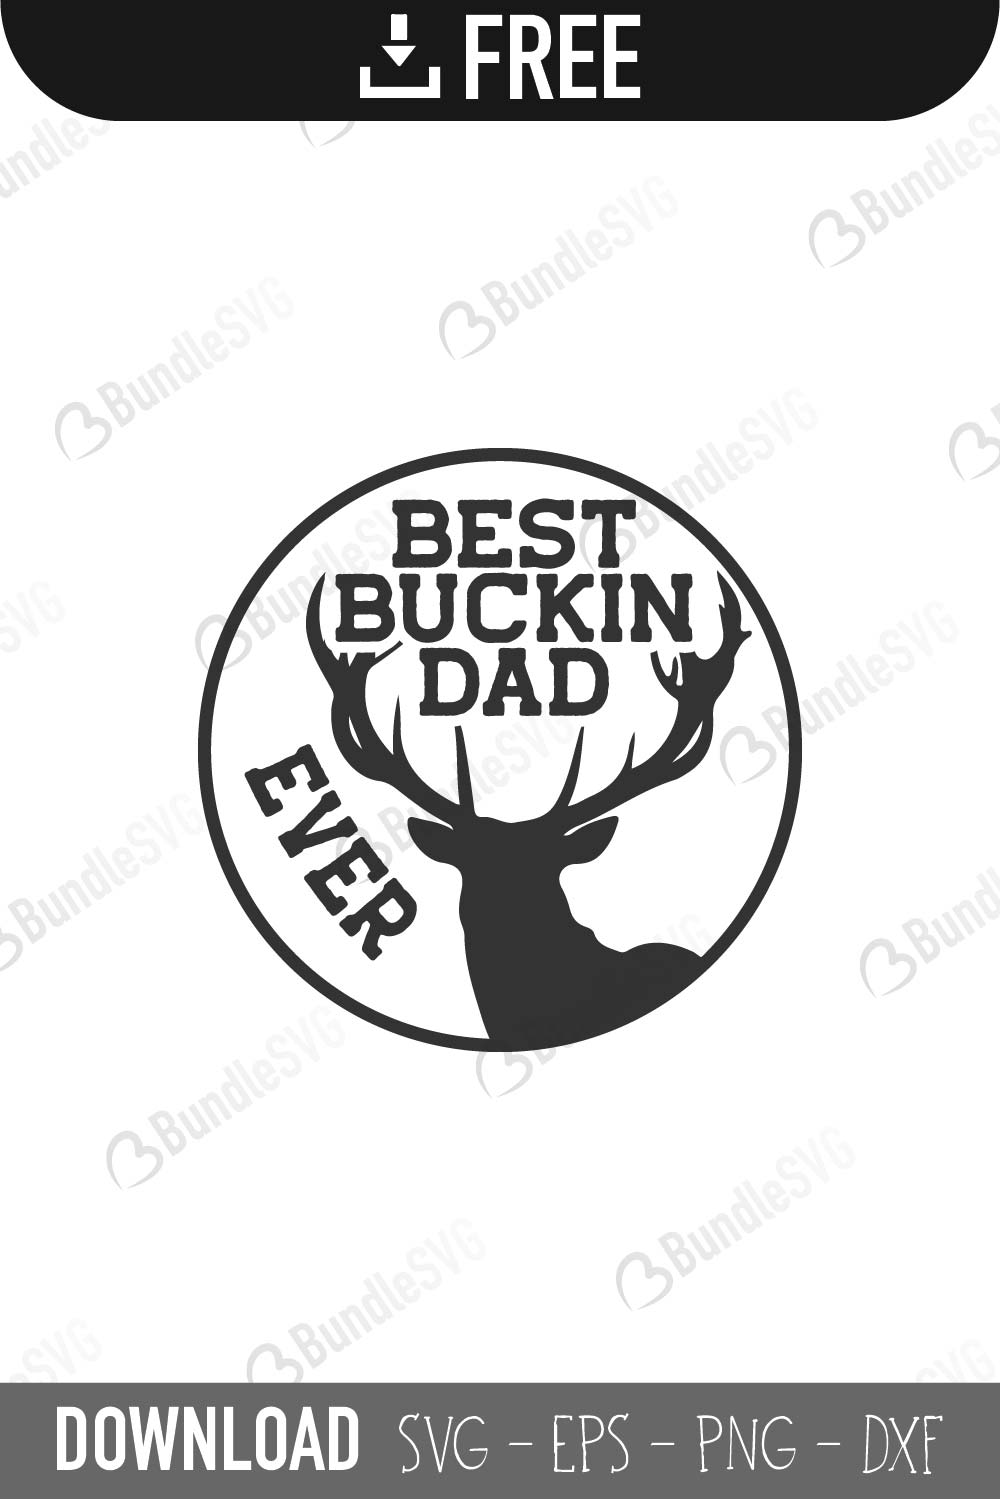 Best Buckin Dad Ever Svg Cut Files Free Download Bundlesvg